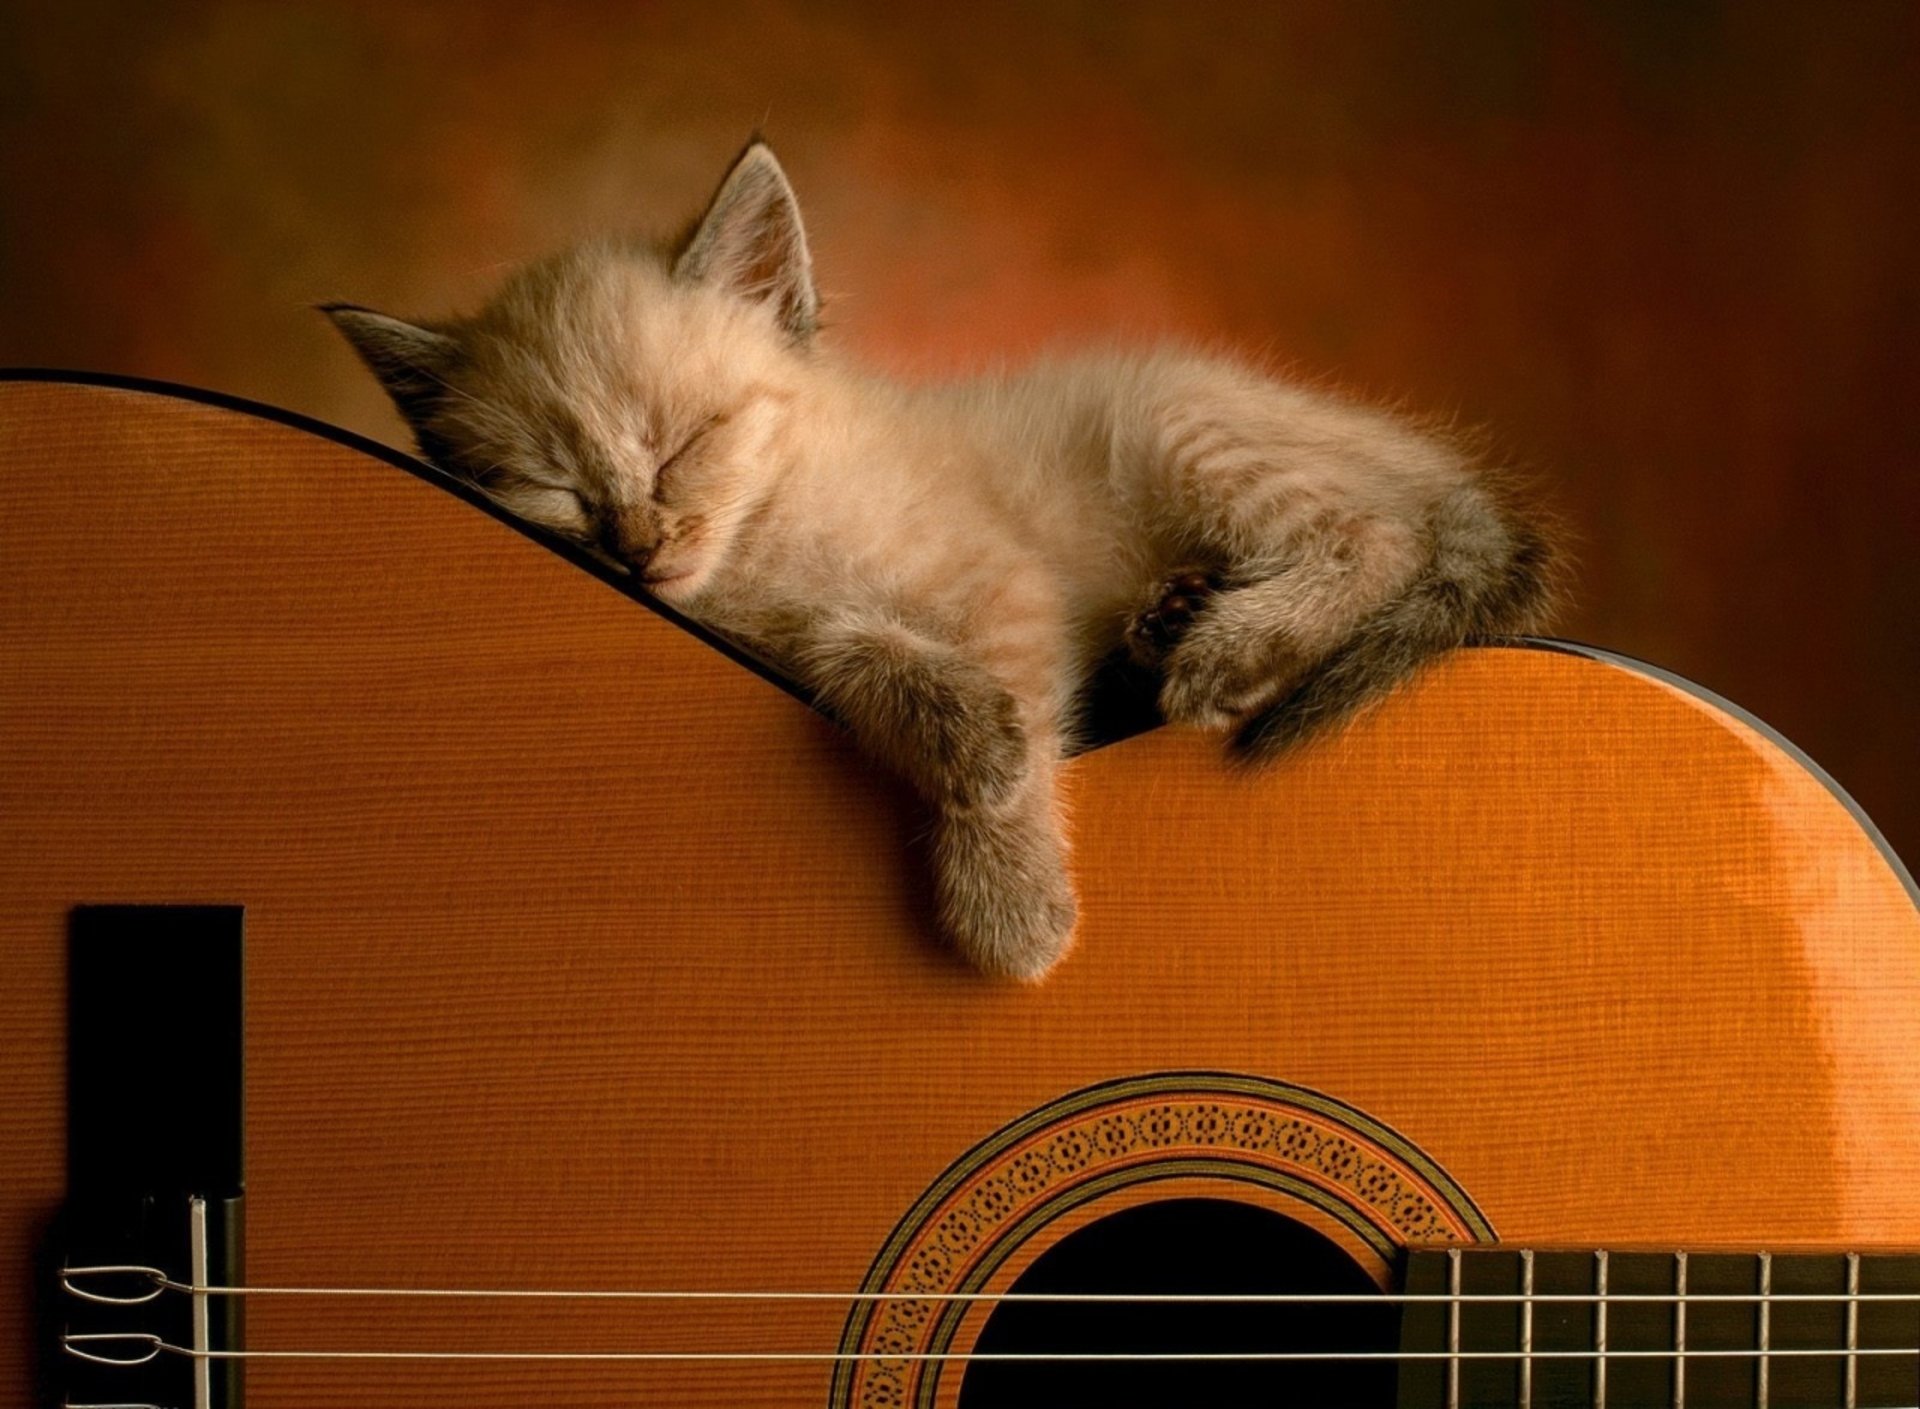 Cute kitten sleeping on a guitar